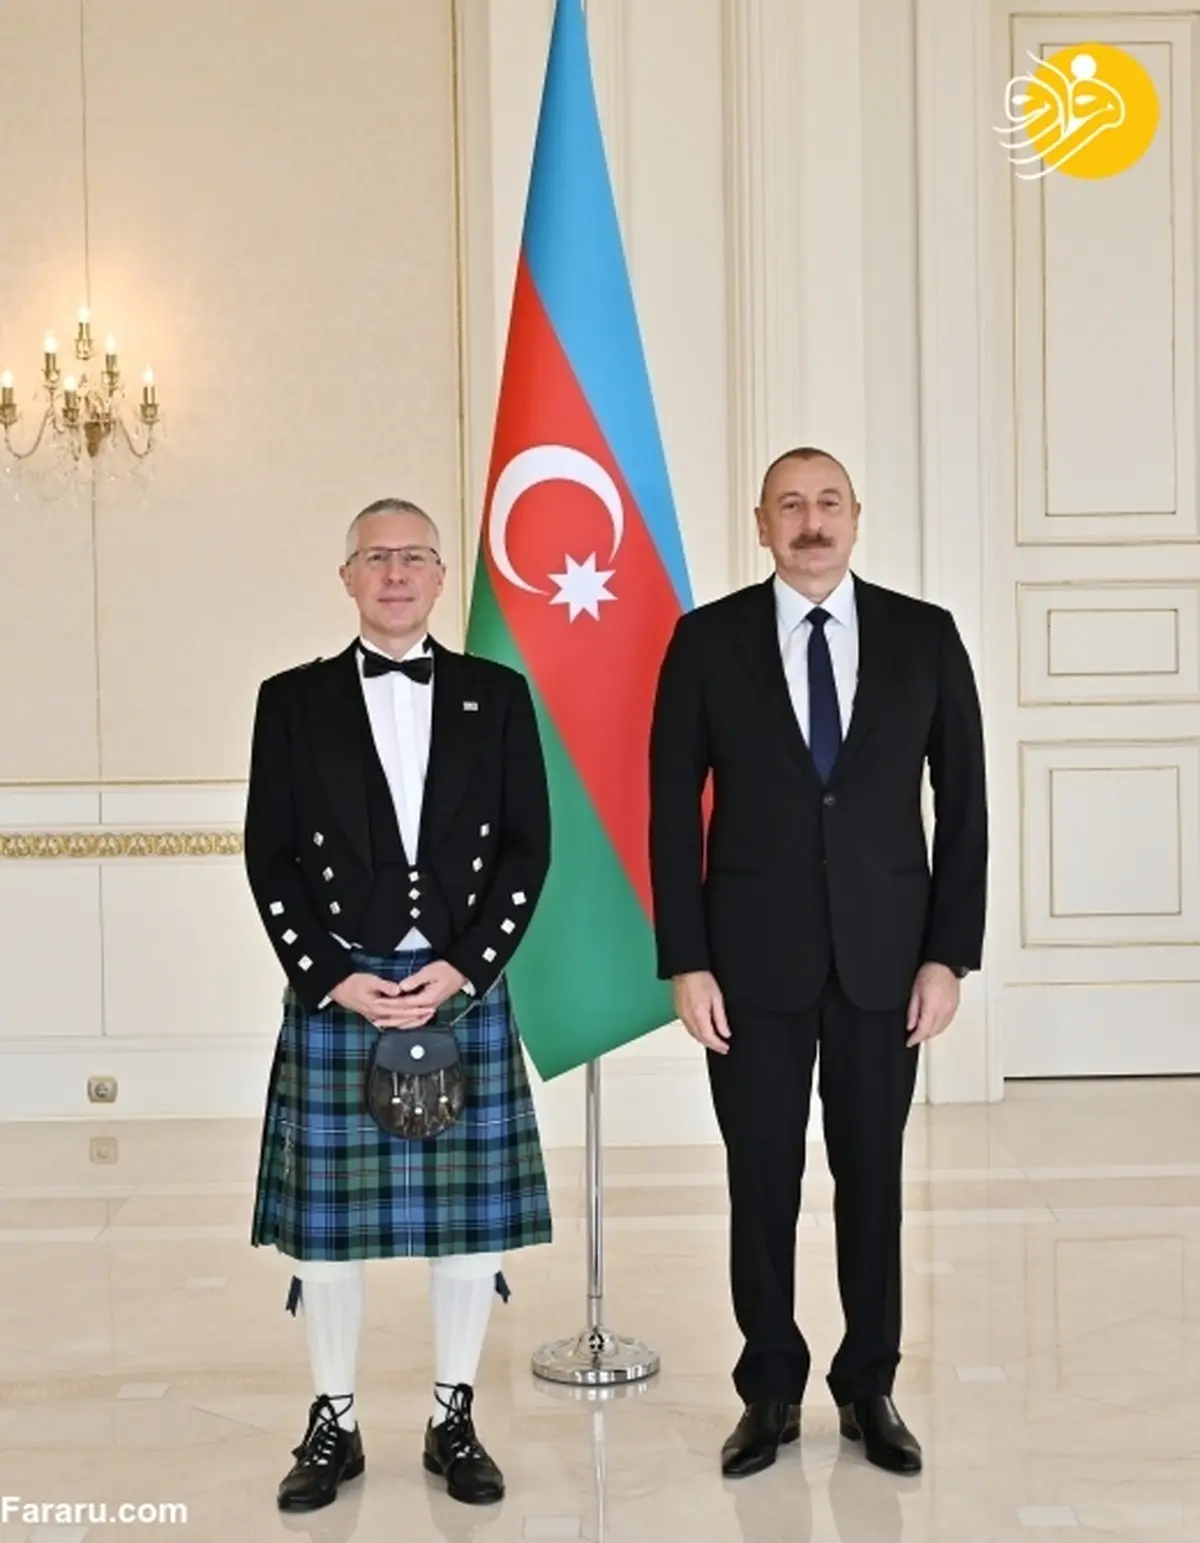 پوشش عجیب سفیر انگلیس در مقابل رئیس جمهور آذربایجان | پوشش اسکاتلندی + تصویر